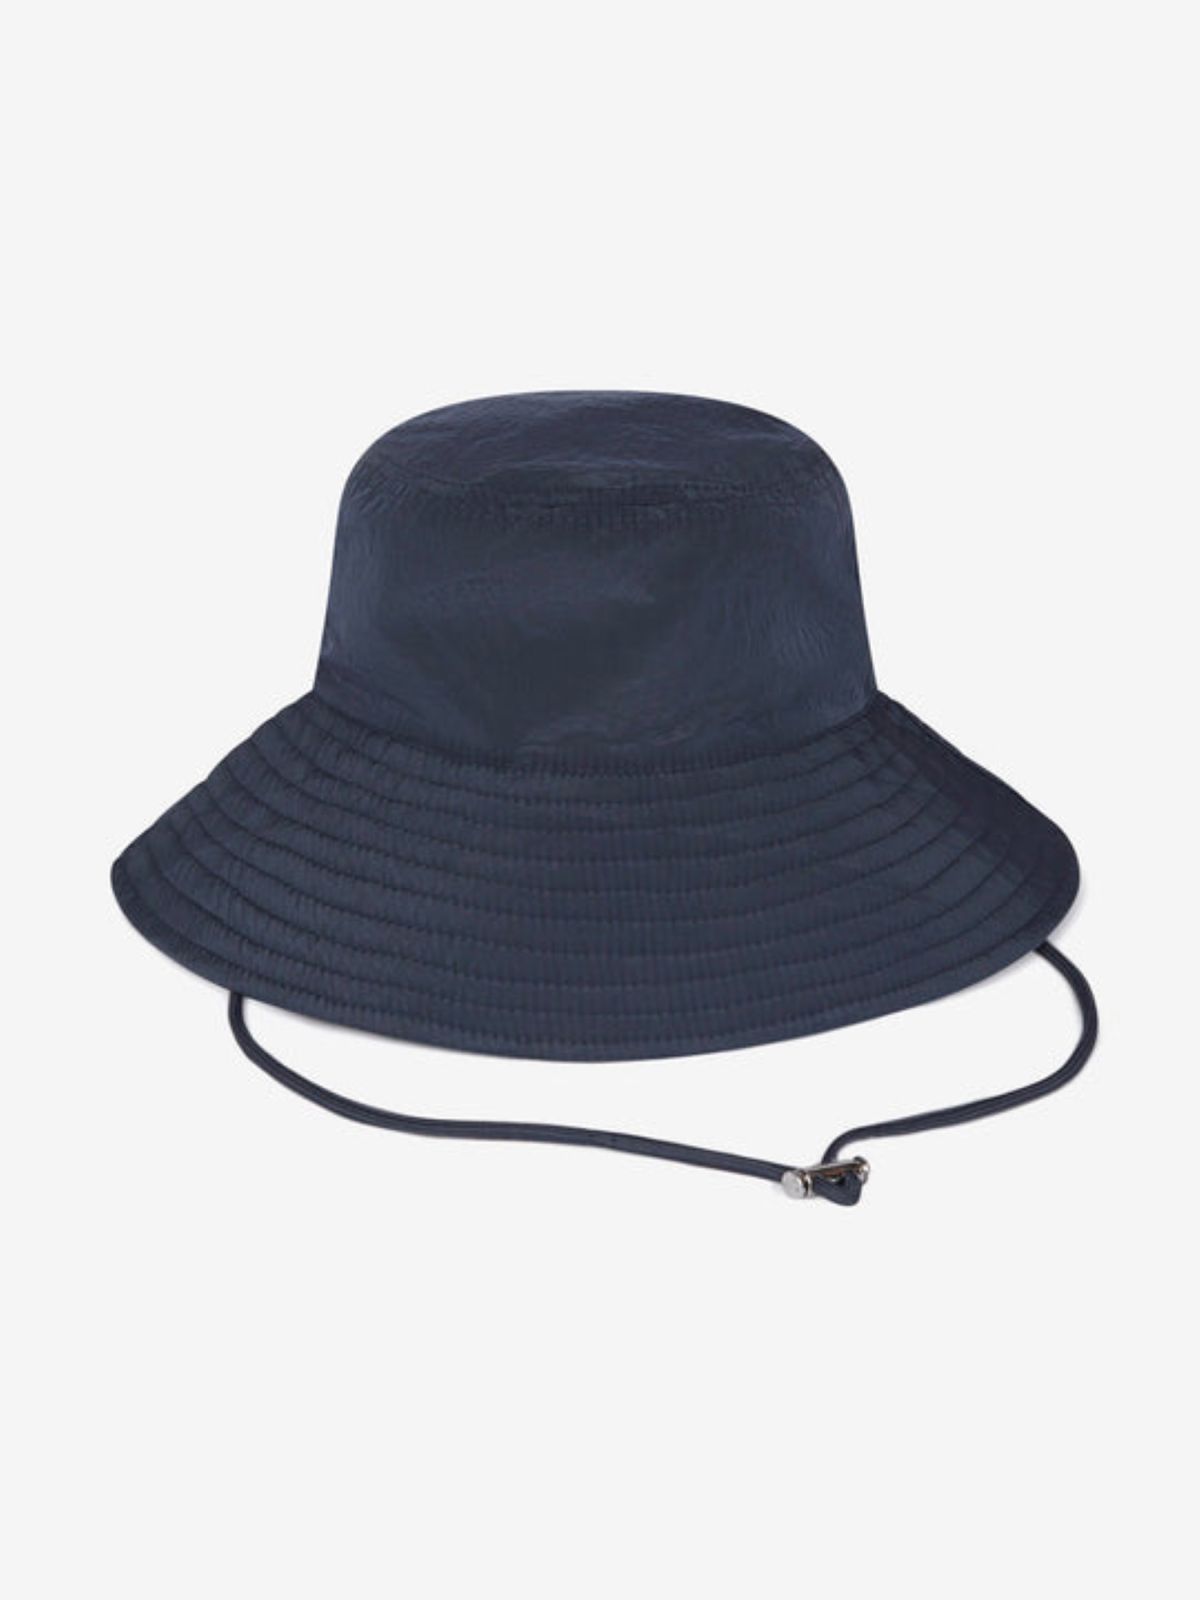  כובע באקט עם לוגו של VARLEY